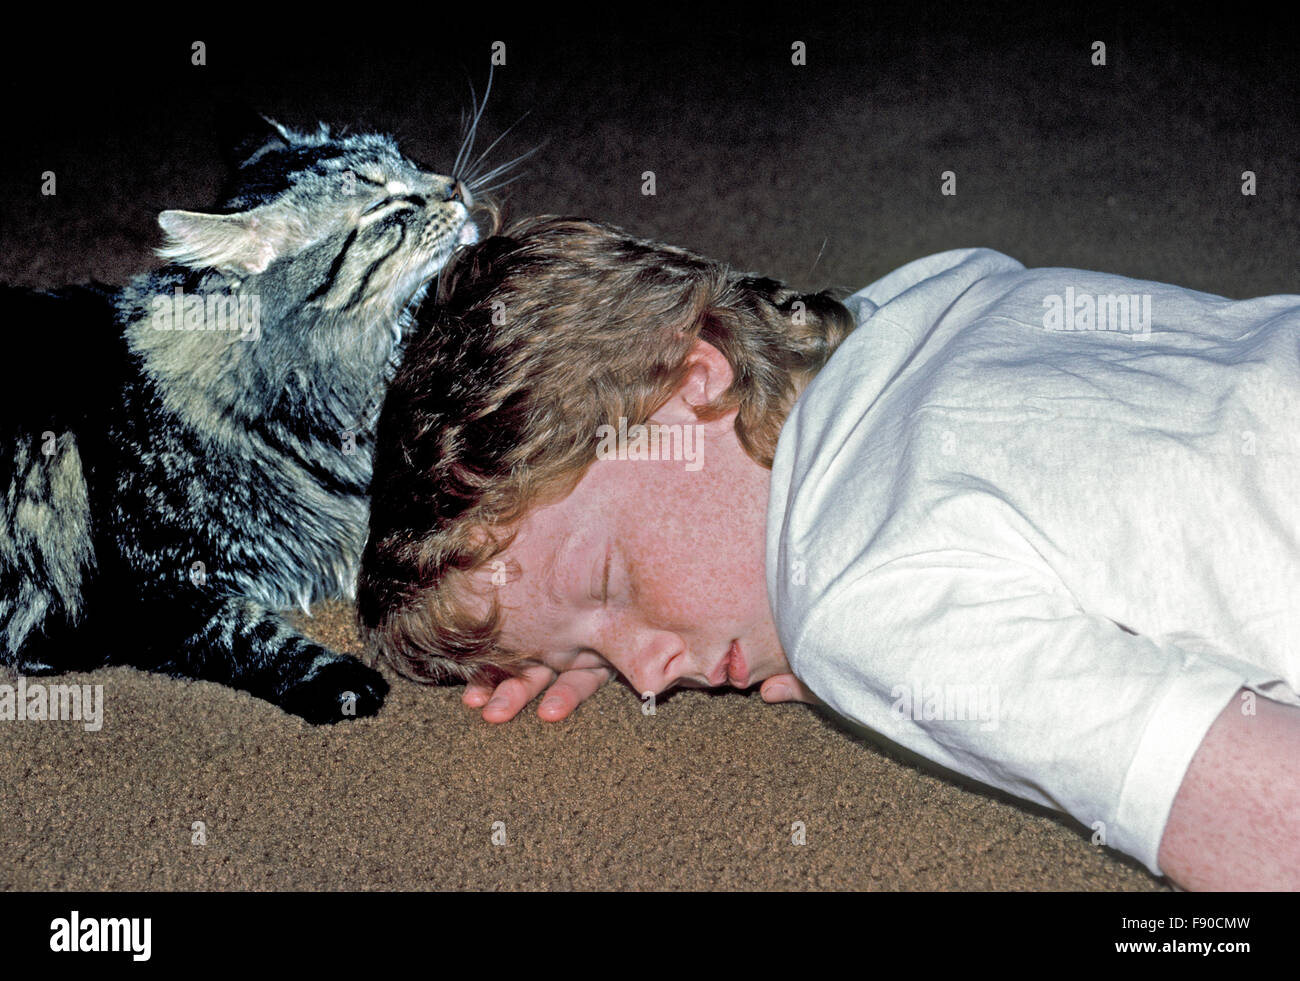 Graue und schwarze Katze liegt gegen den behaarten Kopf von einer 12-Year-Old American Boy, die zu Hause auf einem Teppichboden in diesem friedlichen ehrliches Porträt Katze und Freund schläft. -Modell veröffentlicht. Stockfoto